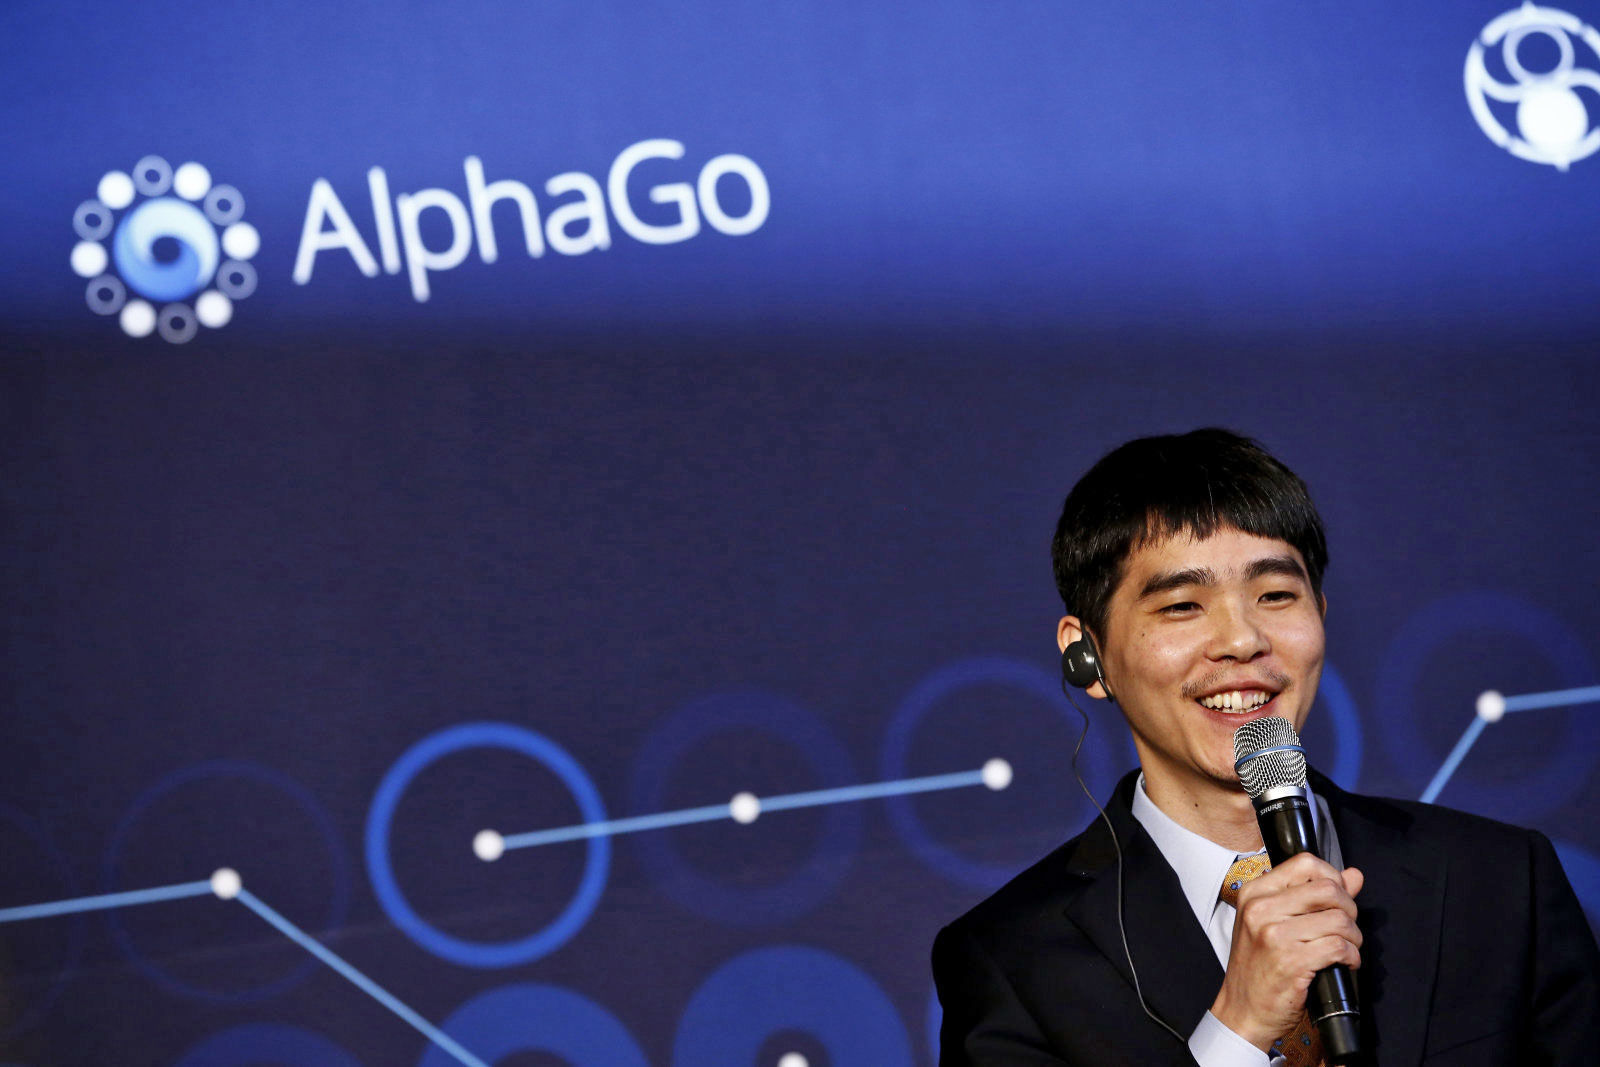 围棋战无不胜 谷歌AlphaGo现在要转战国际象棋